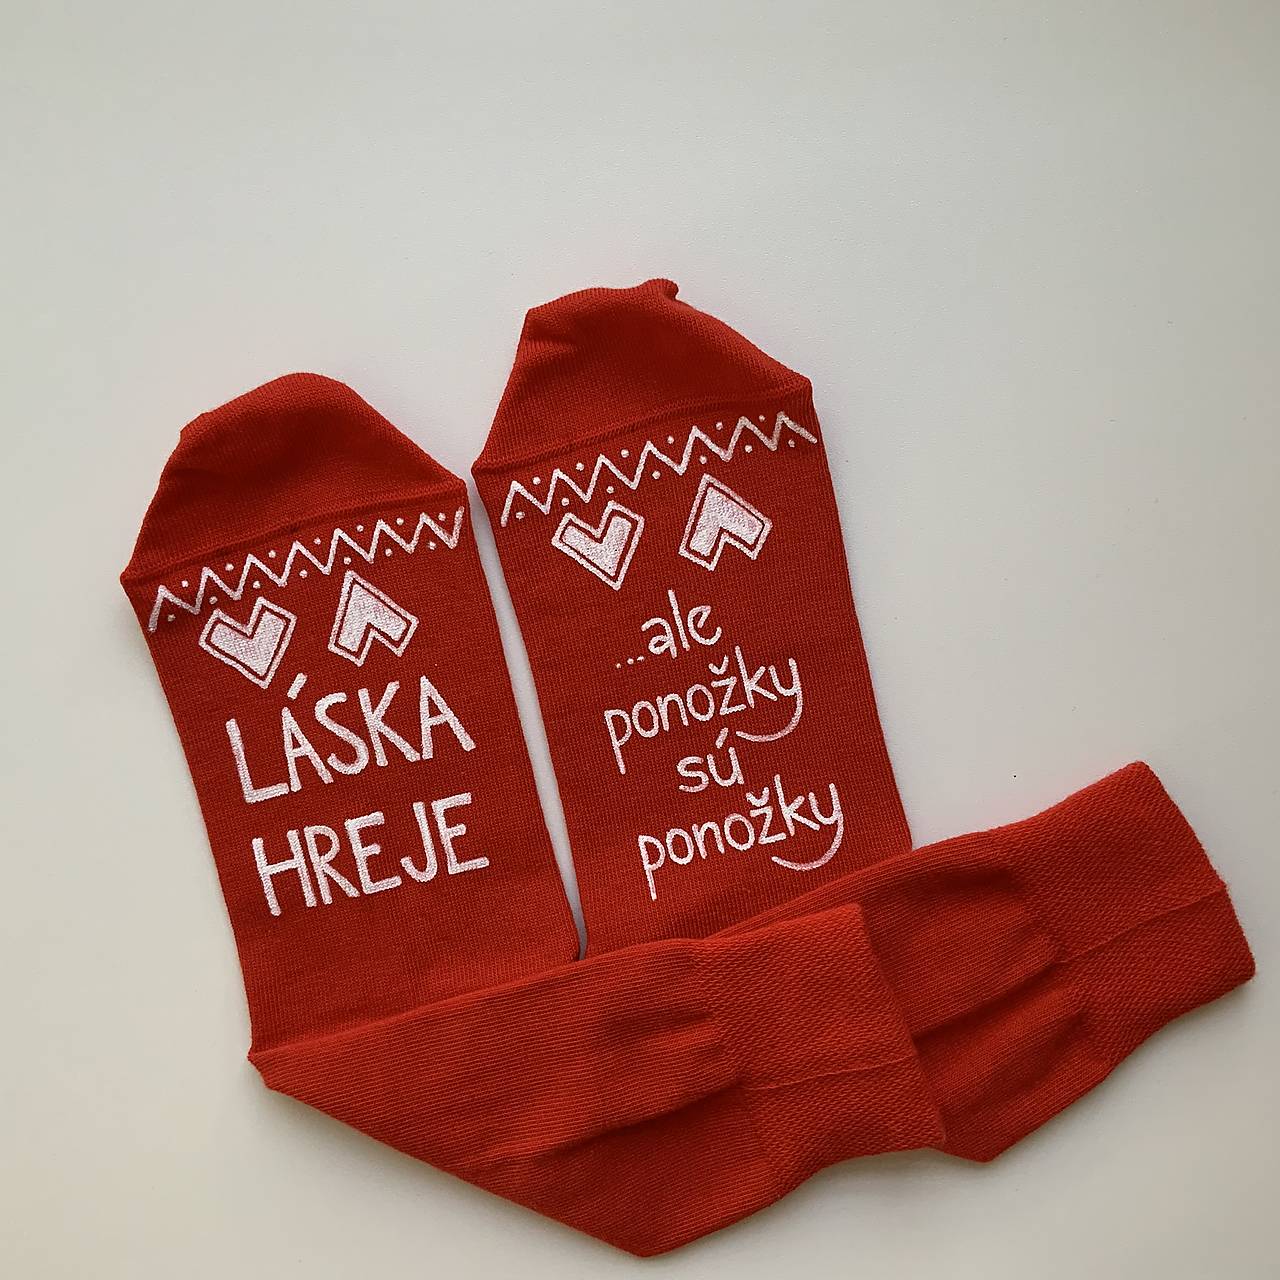 Maľované ponožky s nápisom “LÁSKA HREJE, ale ponožky sú ponožky :) (Červené)